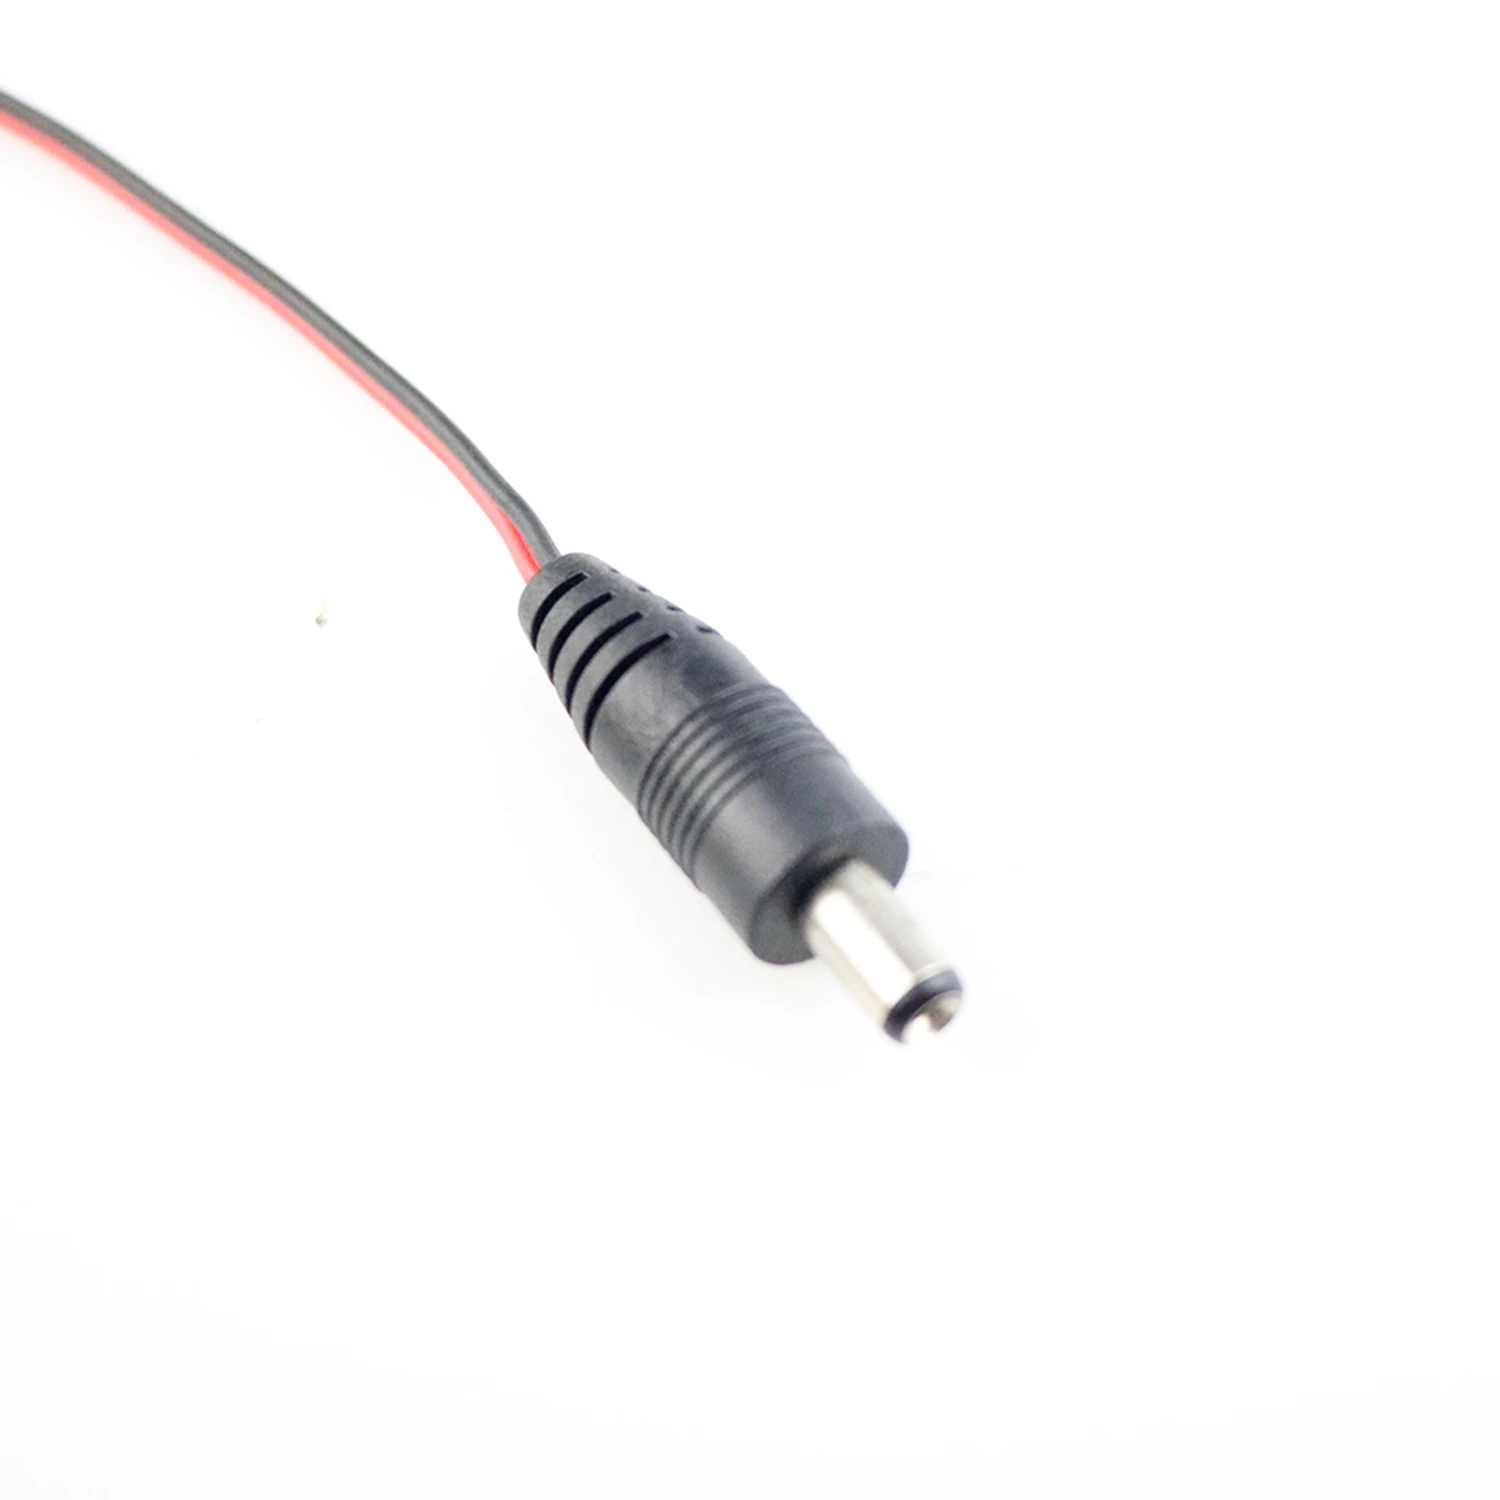 1 шт. 4-контактный разъем Molex для подключения кабеля питания к DC 5,5*2,5 мм Мужской Шнур 28 см жгут проводов для компьютера светодиодные полосы света Быстрая Q